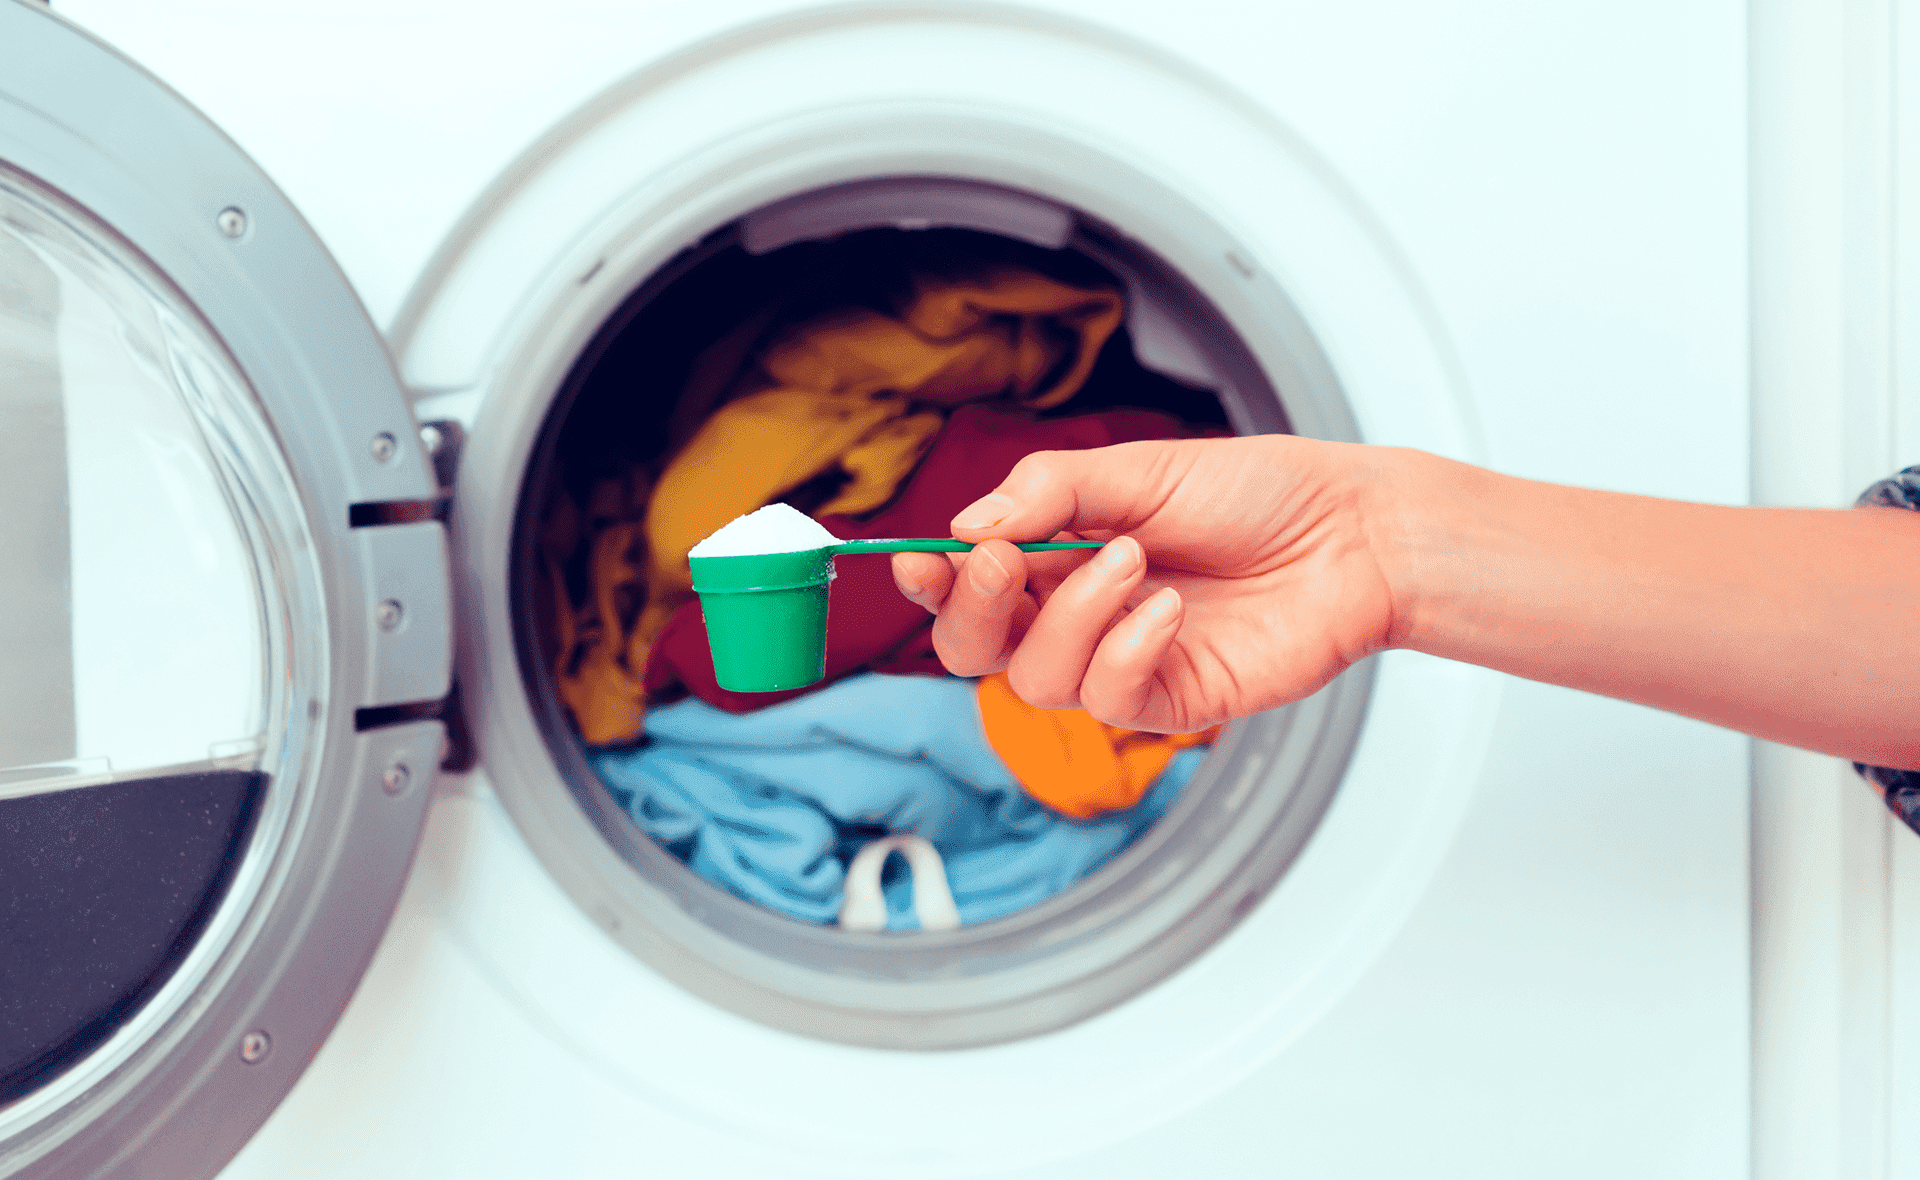 Cómo usar correctamente el detergente en Polvo? - Dersa